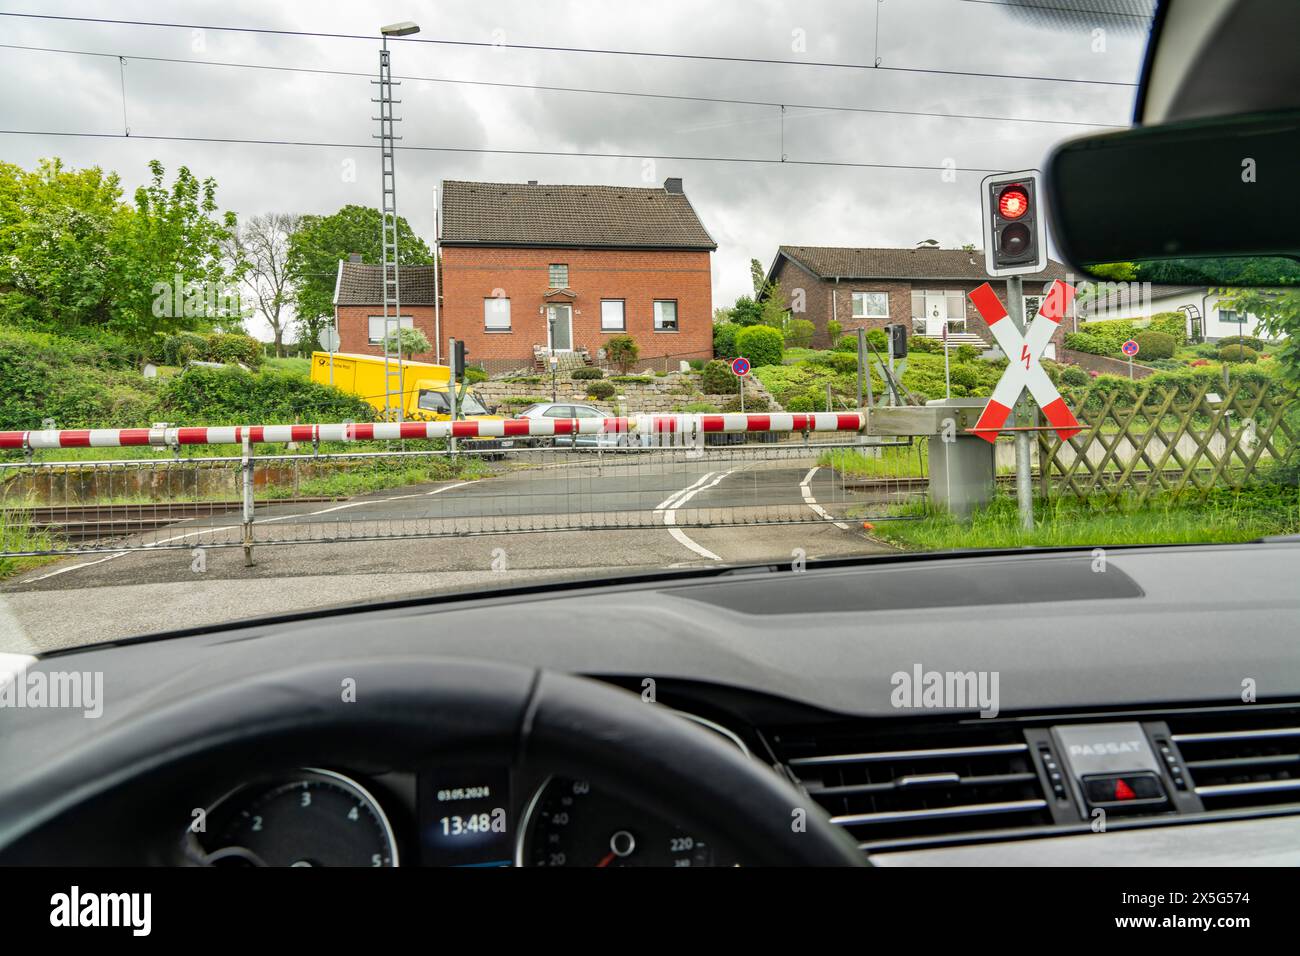 Voiture en attente à un passage à niveau, barrières fermées, feu d'avertissement rouge, feu de circulation et croix d'Andrew, près de Geilenkirchen NRW, Allemagne, Banque D'Images